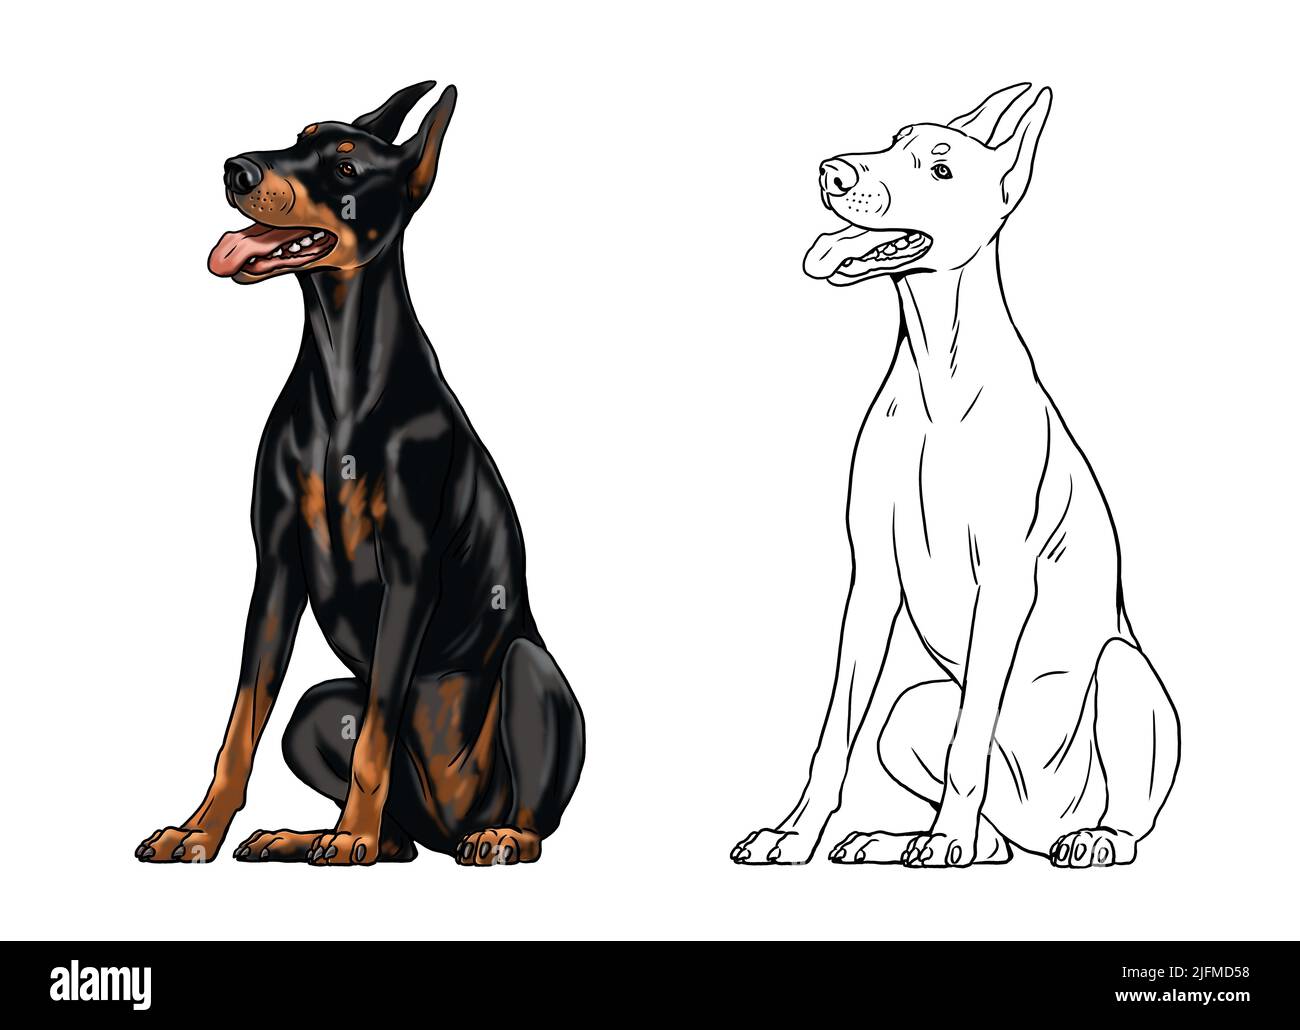 Niedliche Dobermann Zeichnung für zum ausmalen. Isolierte Illustration mit dem eleganten Hund. Schwarze Doberman Pinscher Zeichnung. Stockfoto